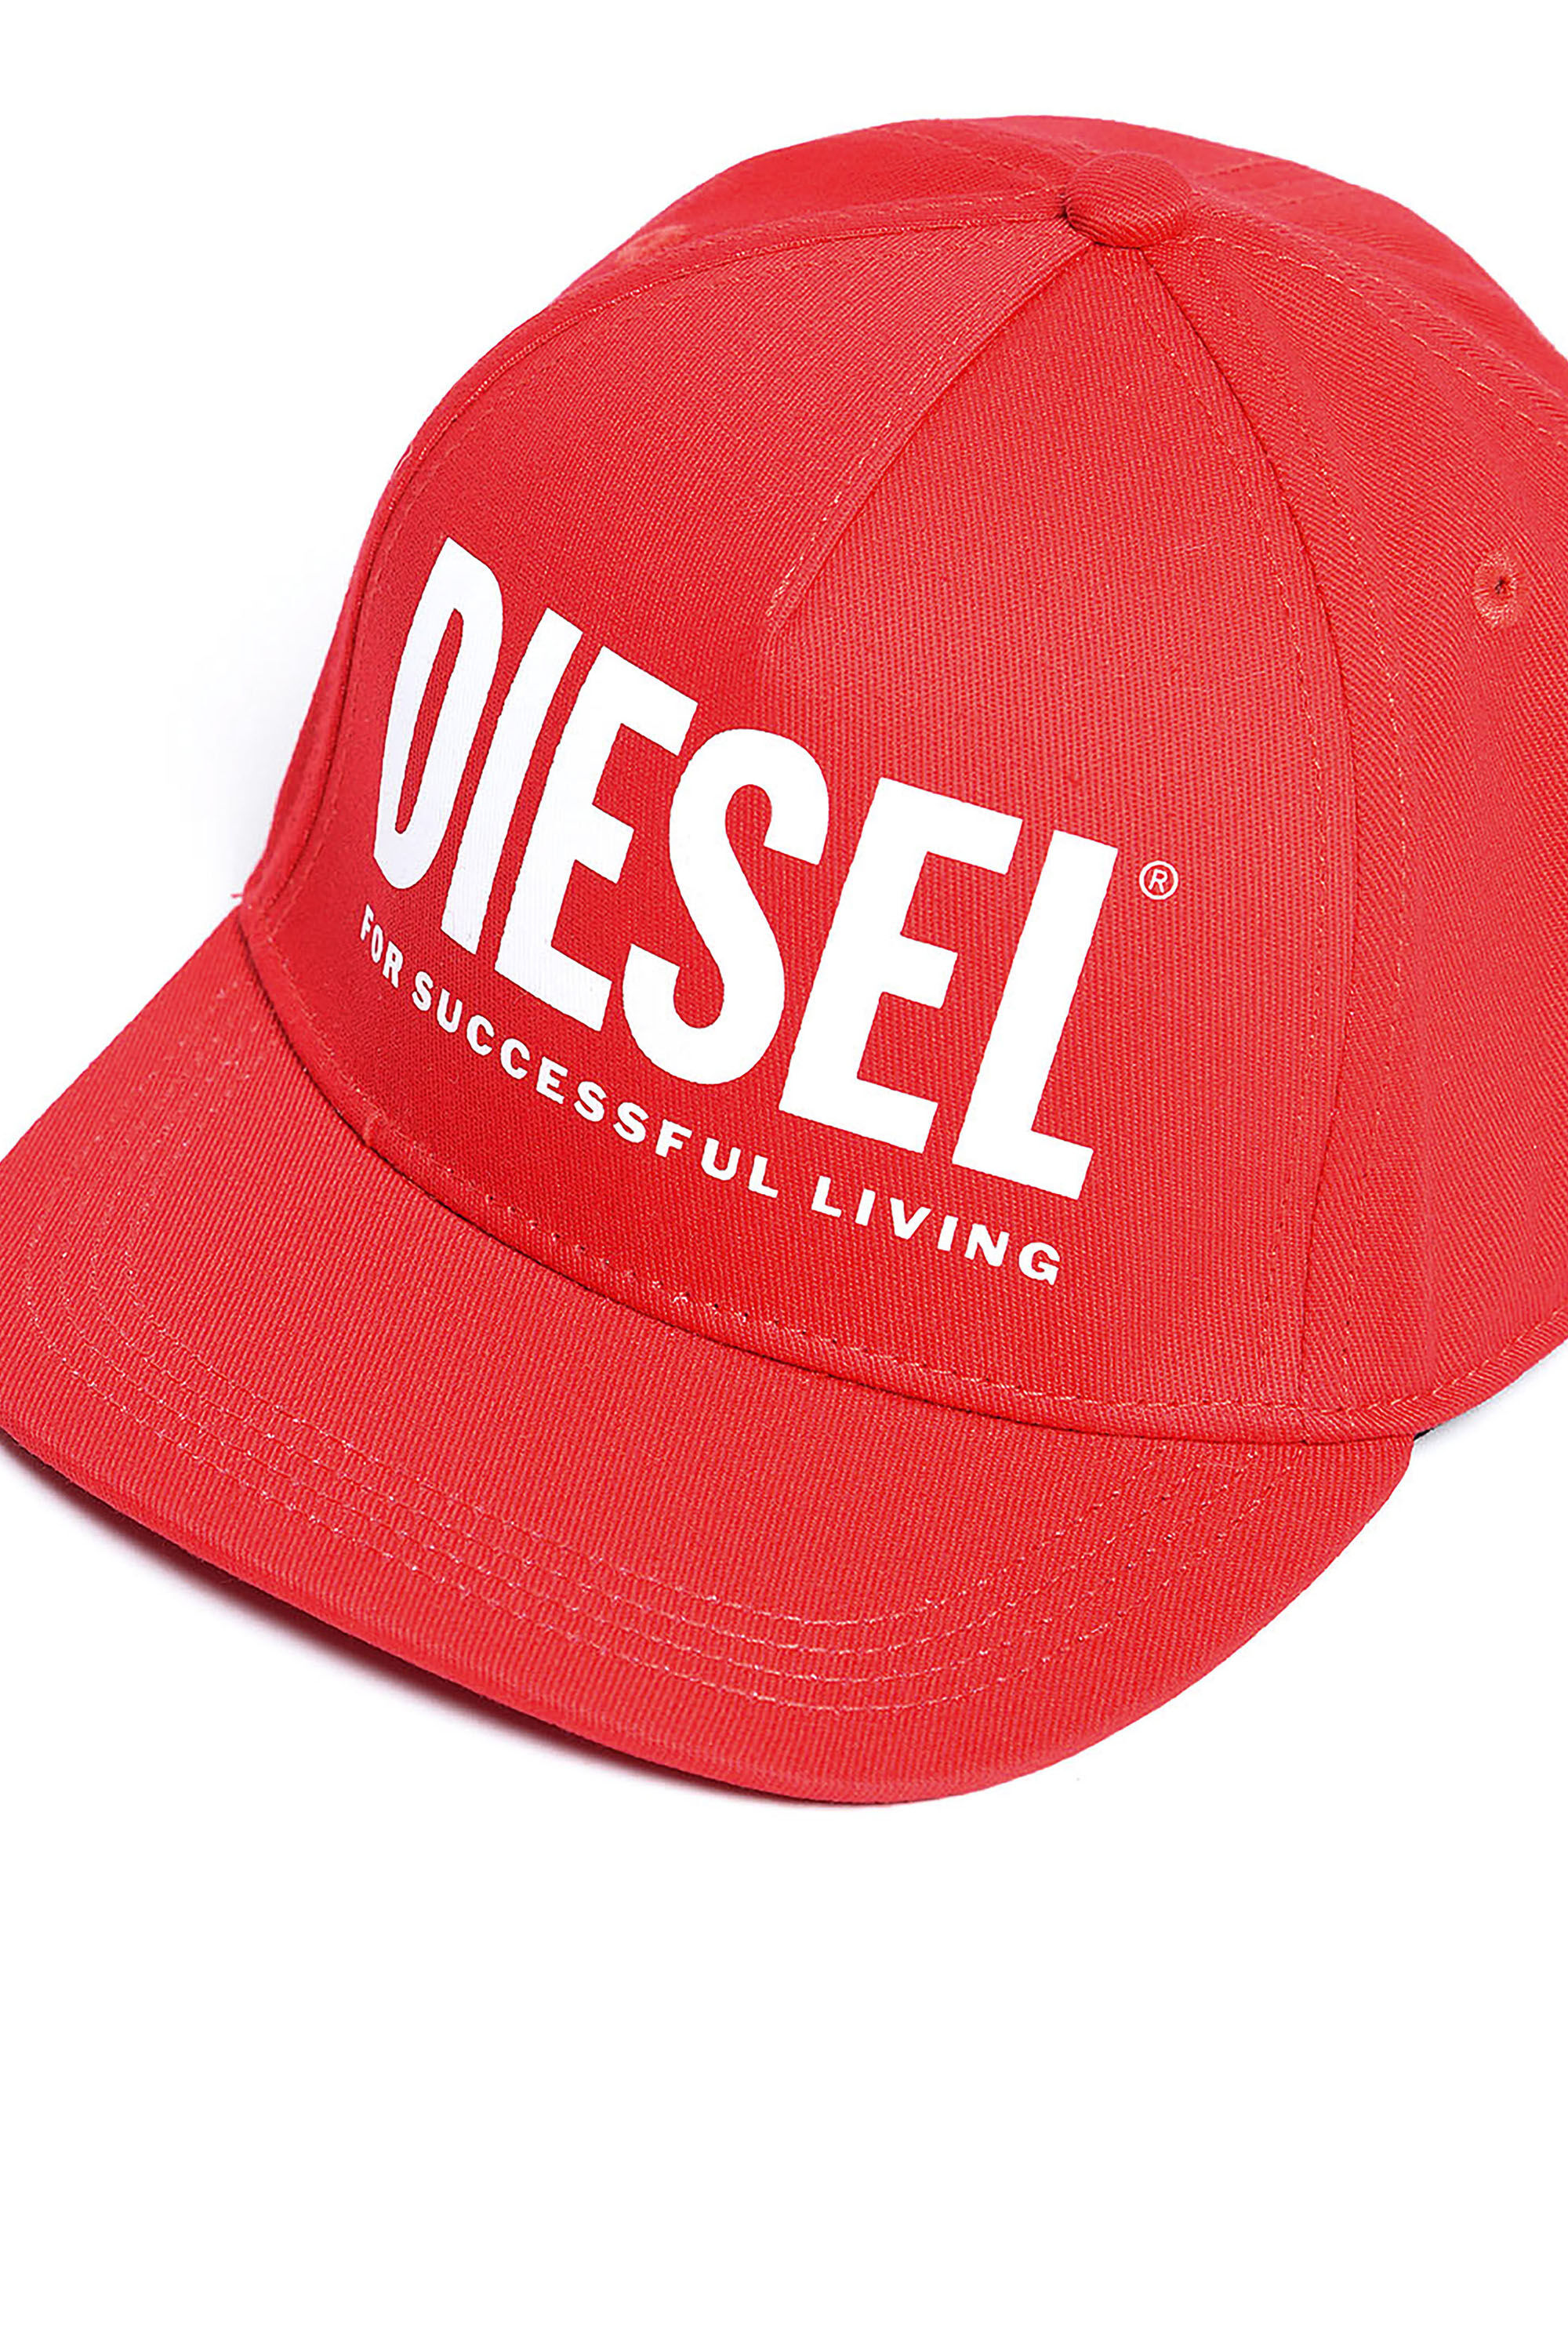 Diesel - FOLLY,  - Image 3